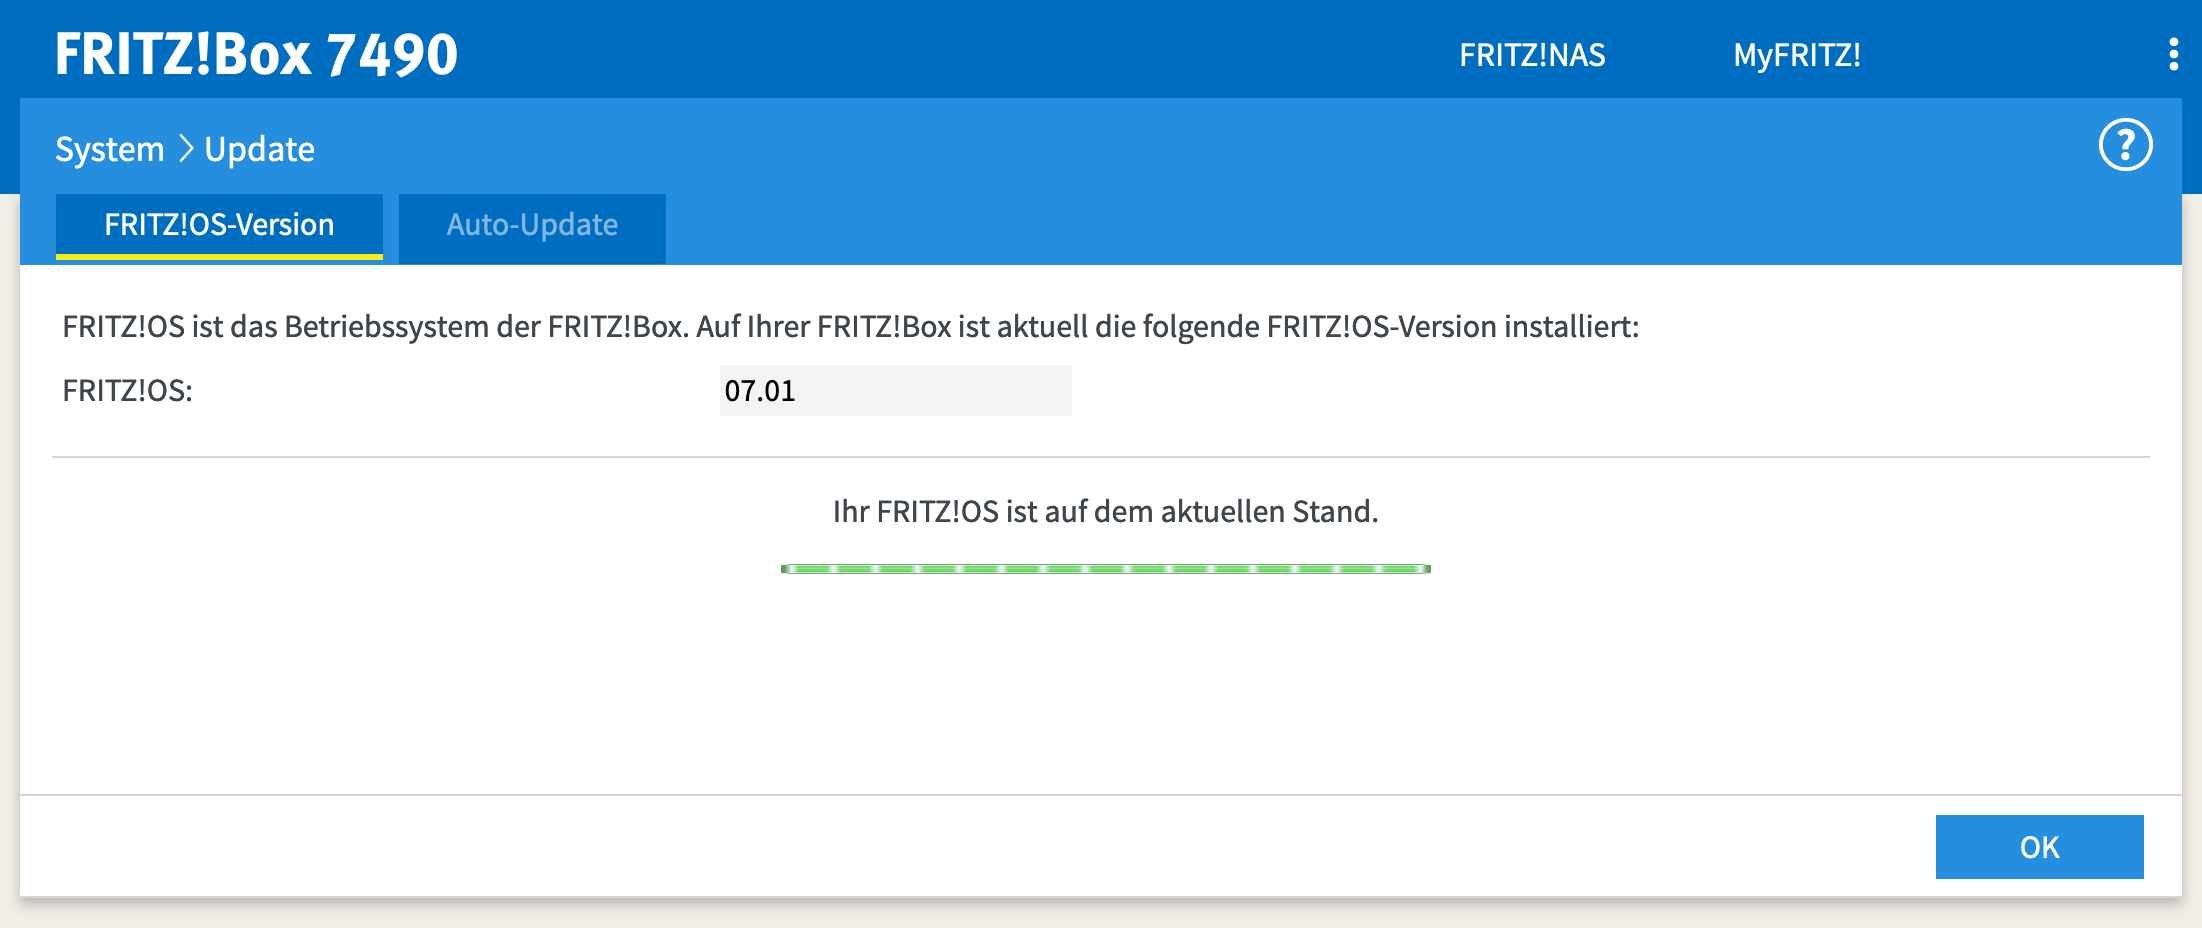 Wichtig ist, dass die FritzBox FritzOS 7 unterstützt.